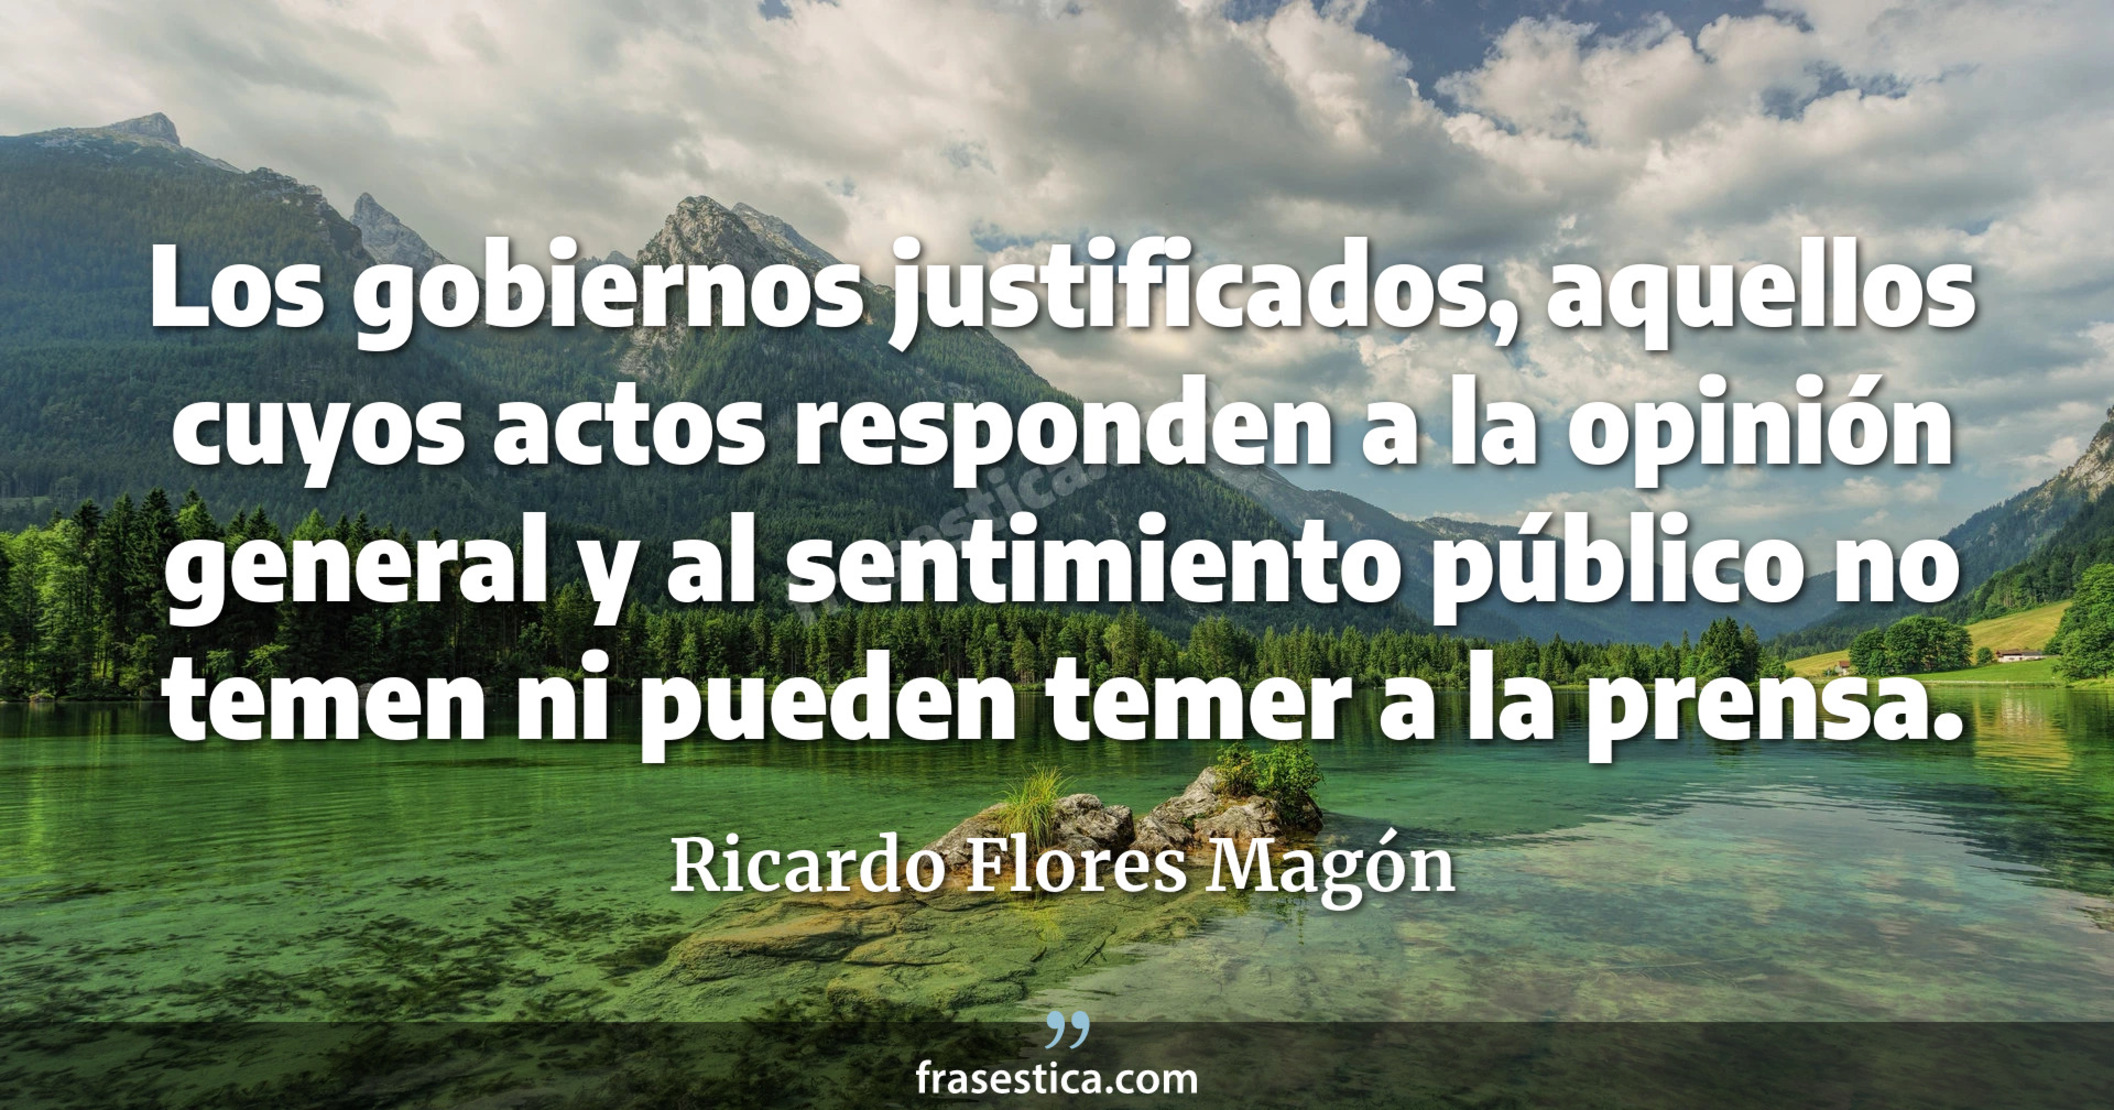 Los gobiernos justificados, aquellos cuyos actos responden a la opinión general y al sentimiento público no temen ni pueden temer a la prensa. - Ricardo Flores Magón